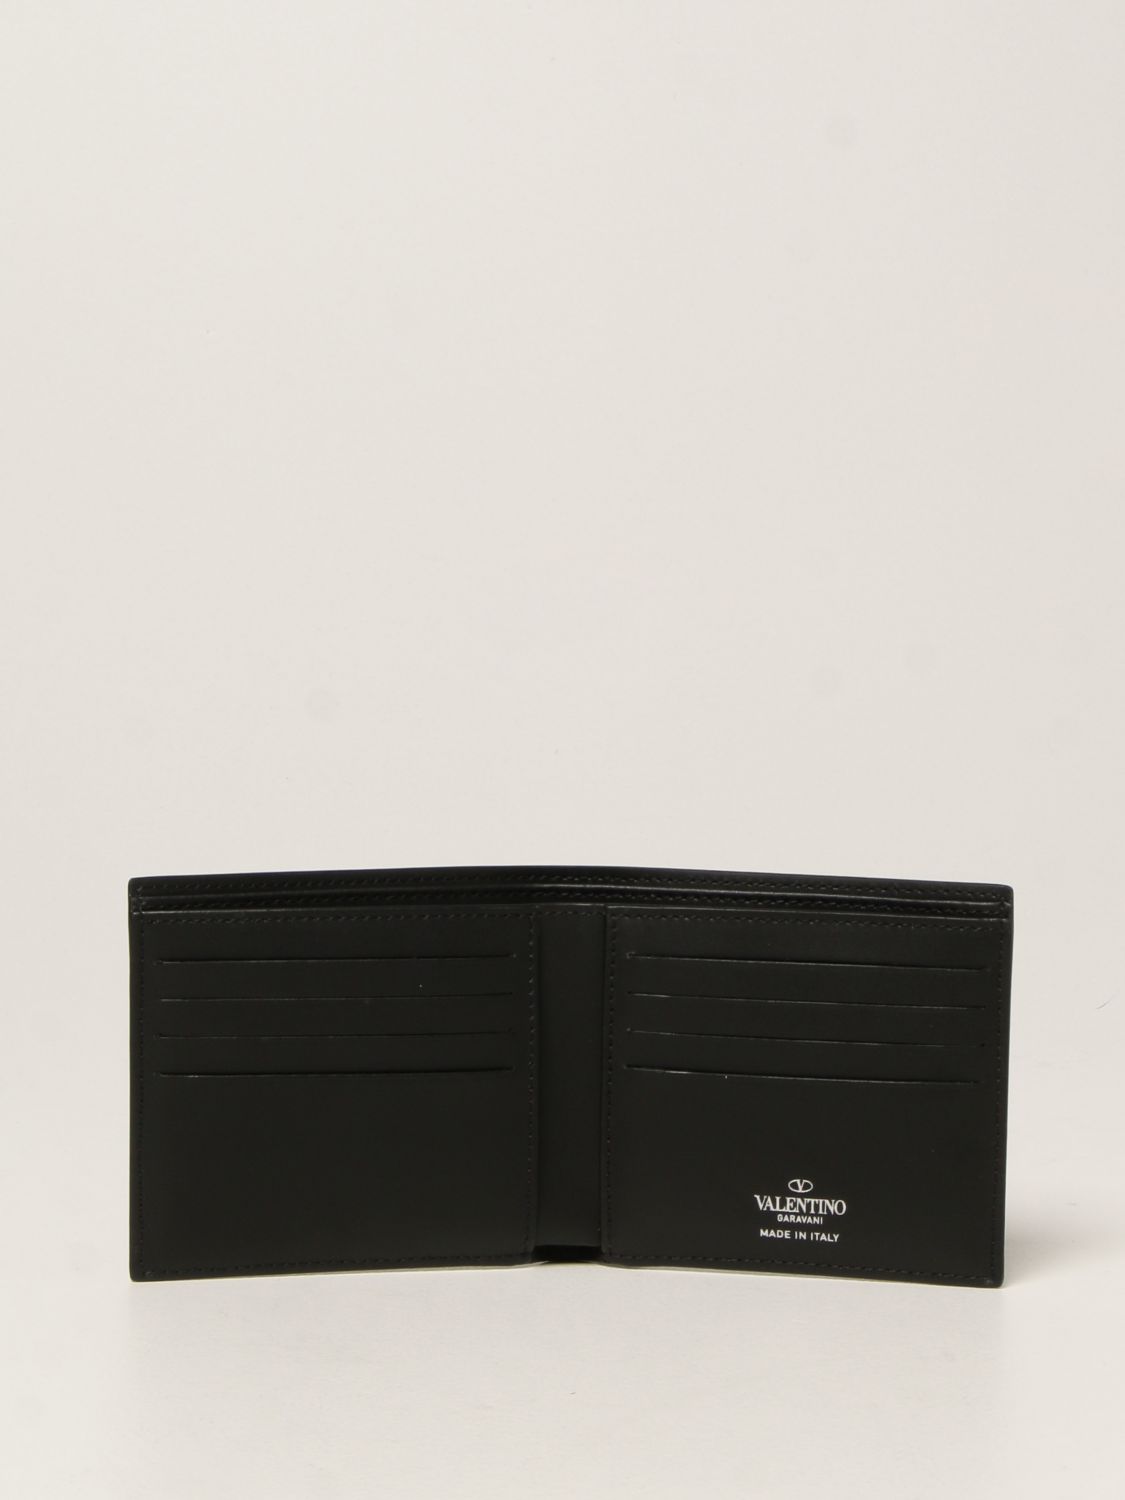 Valentino Garavani leather wallet with VLTN logo